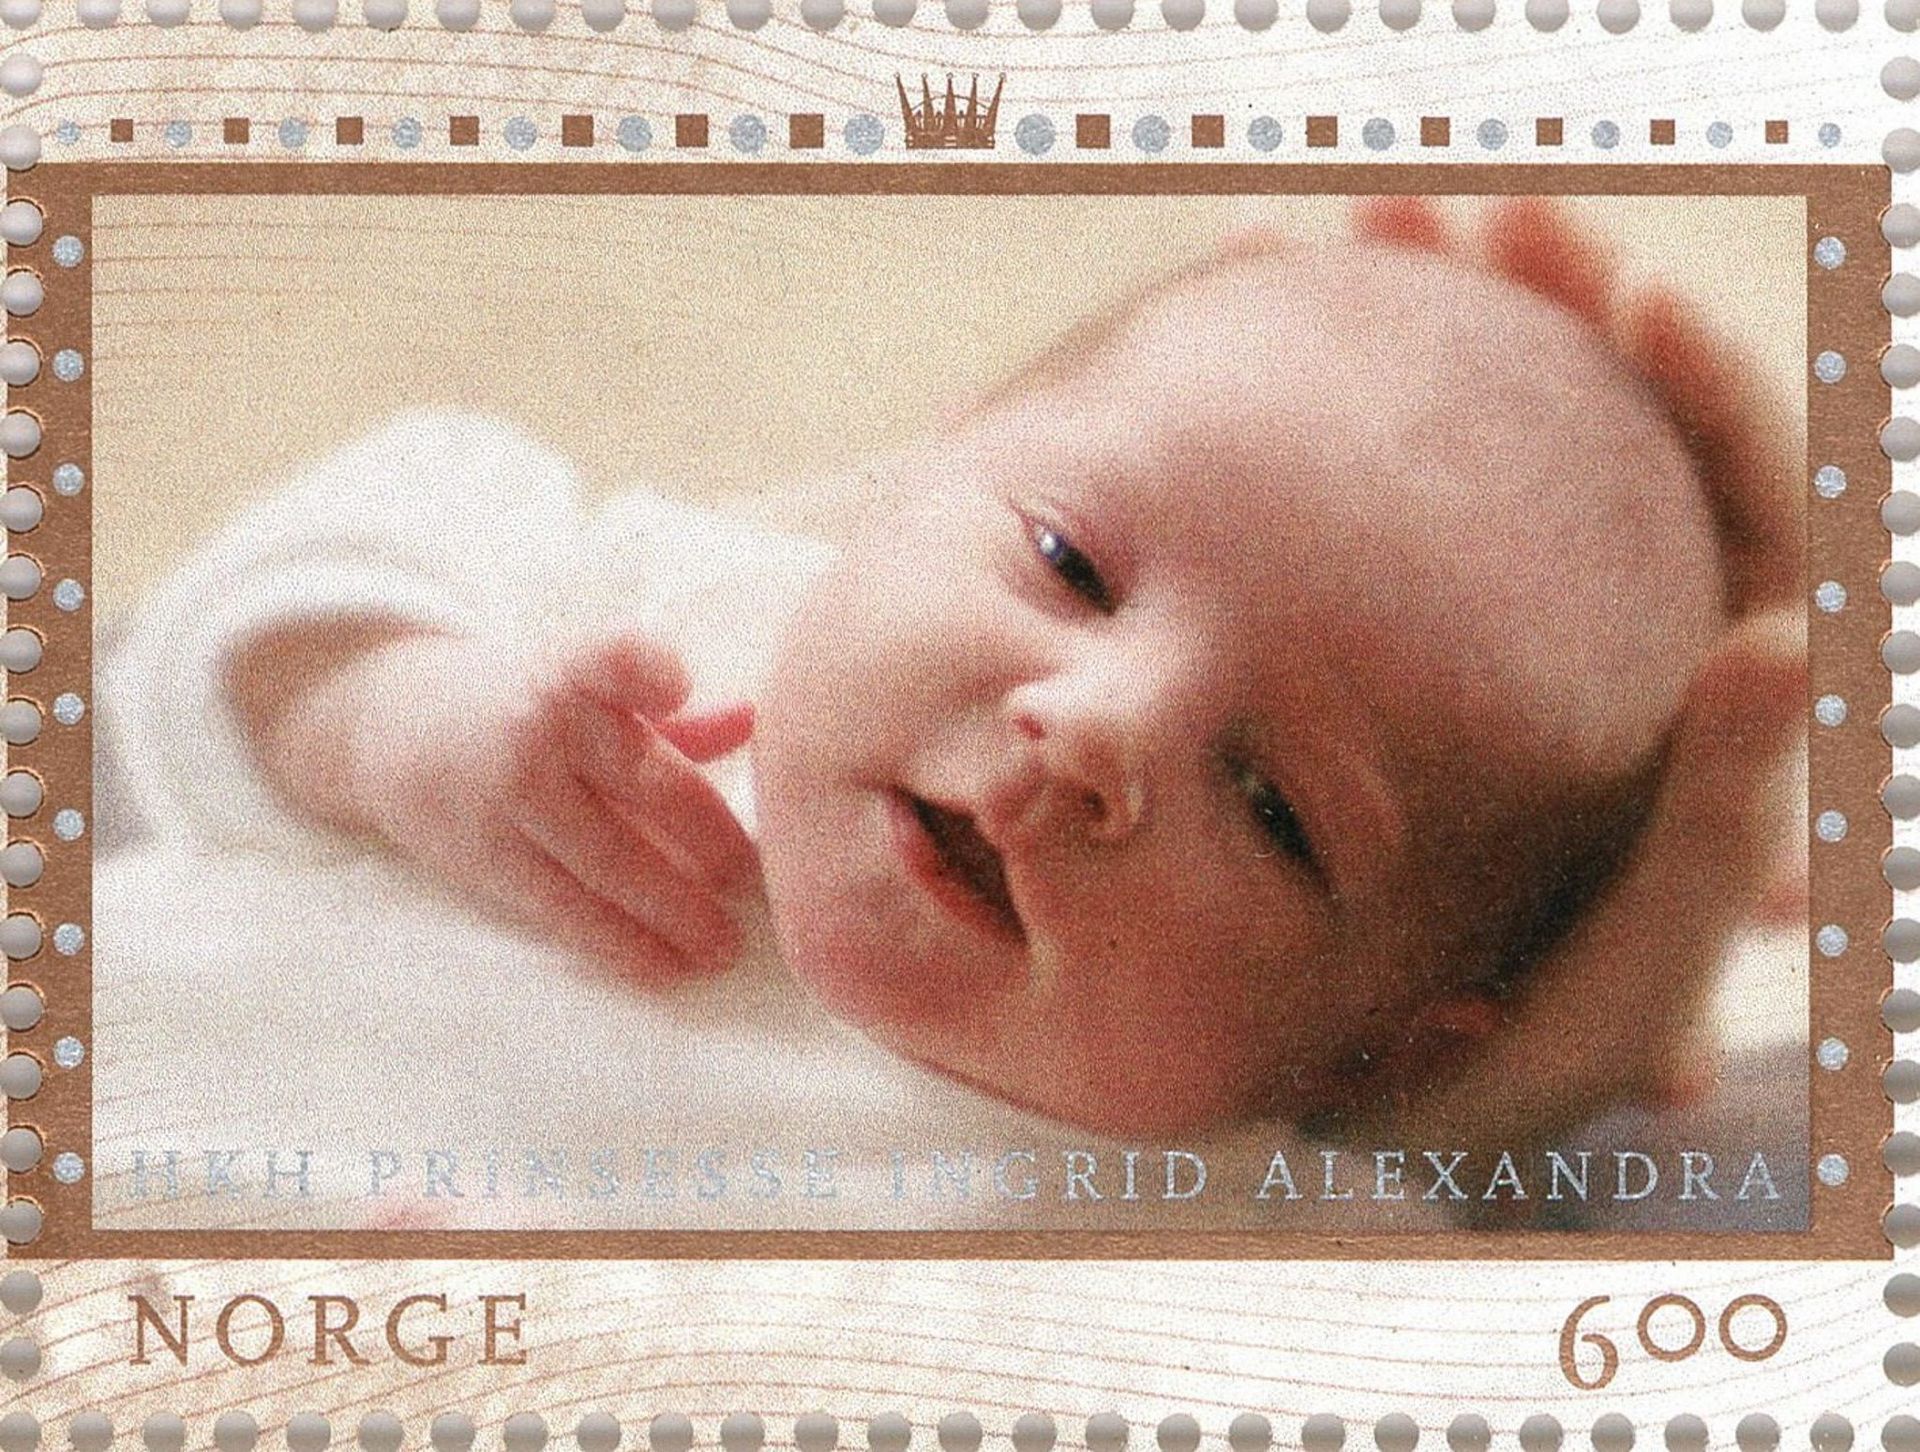 Ter ere van de doop van de jonge prinses wordt in Noorwegen een officiële postzegel uitgegeven.